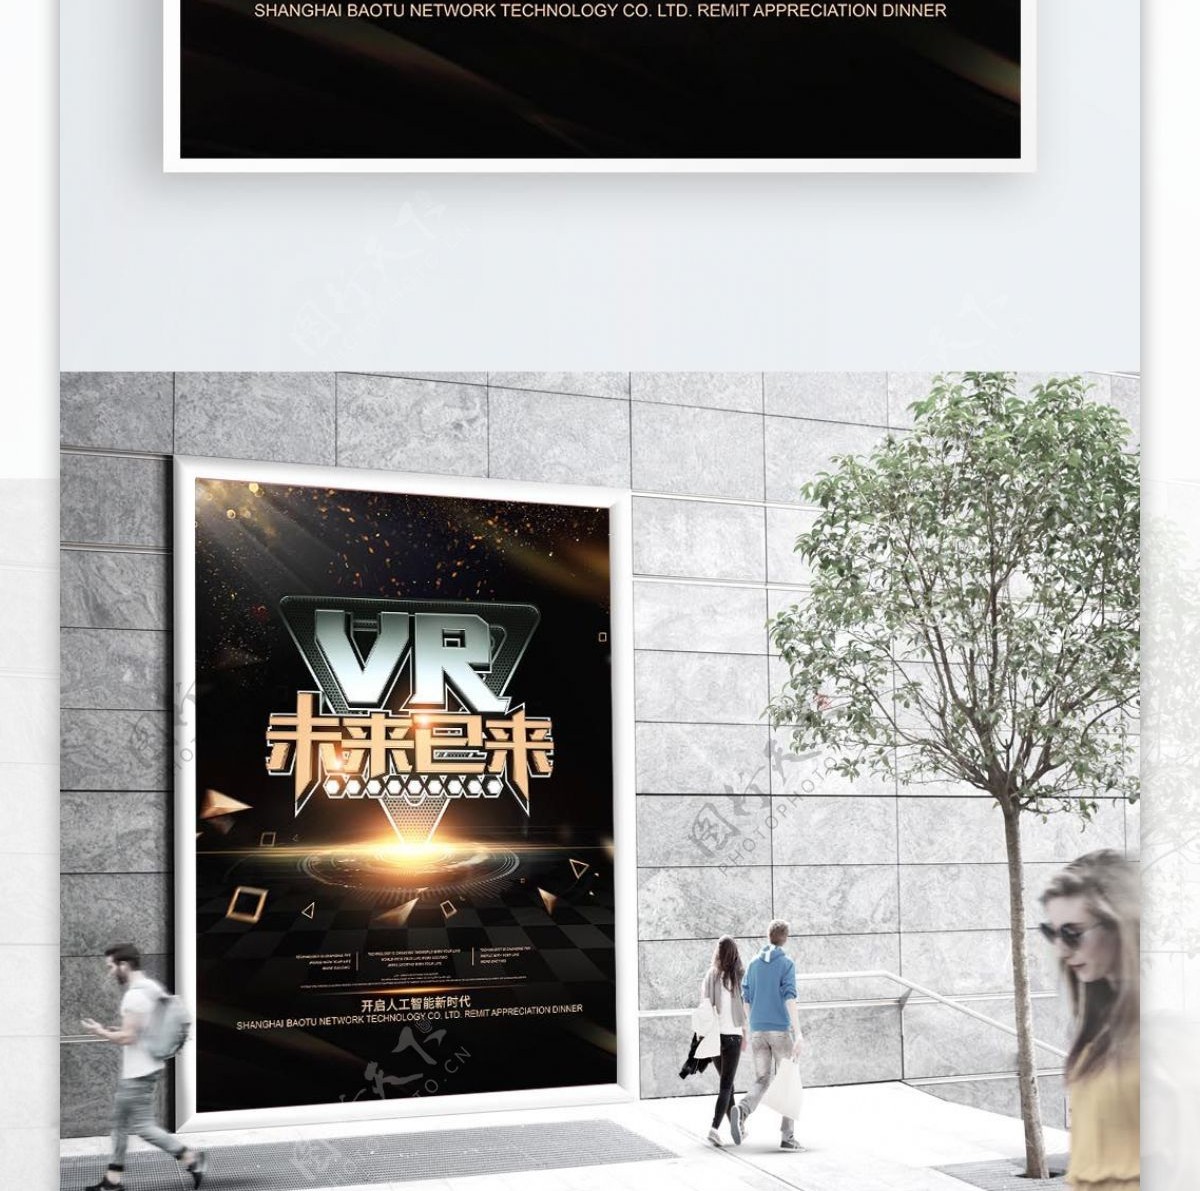 VR未来已来大气黑金企业科技海报